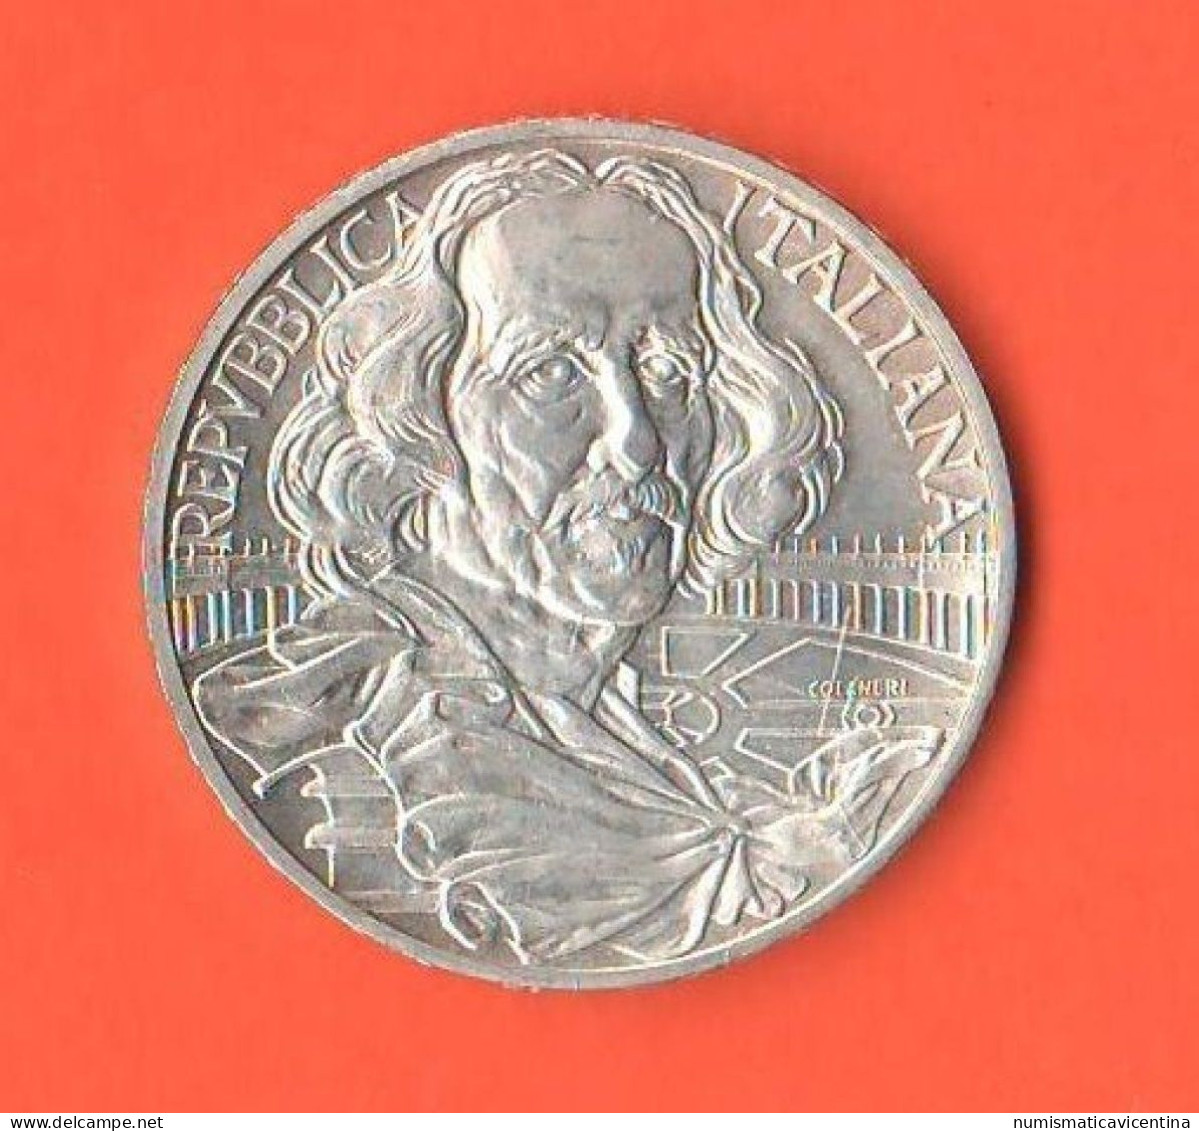 Italia 1000 Lire 1998 Bernini Italy Italie Silver Commemorative Coin - Commemorative